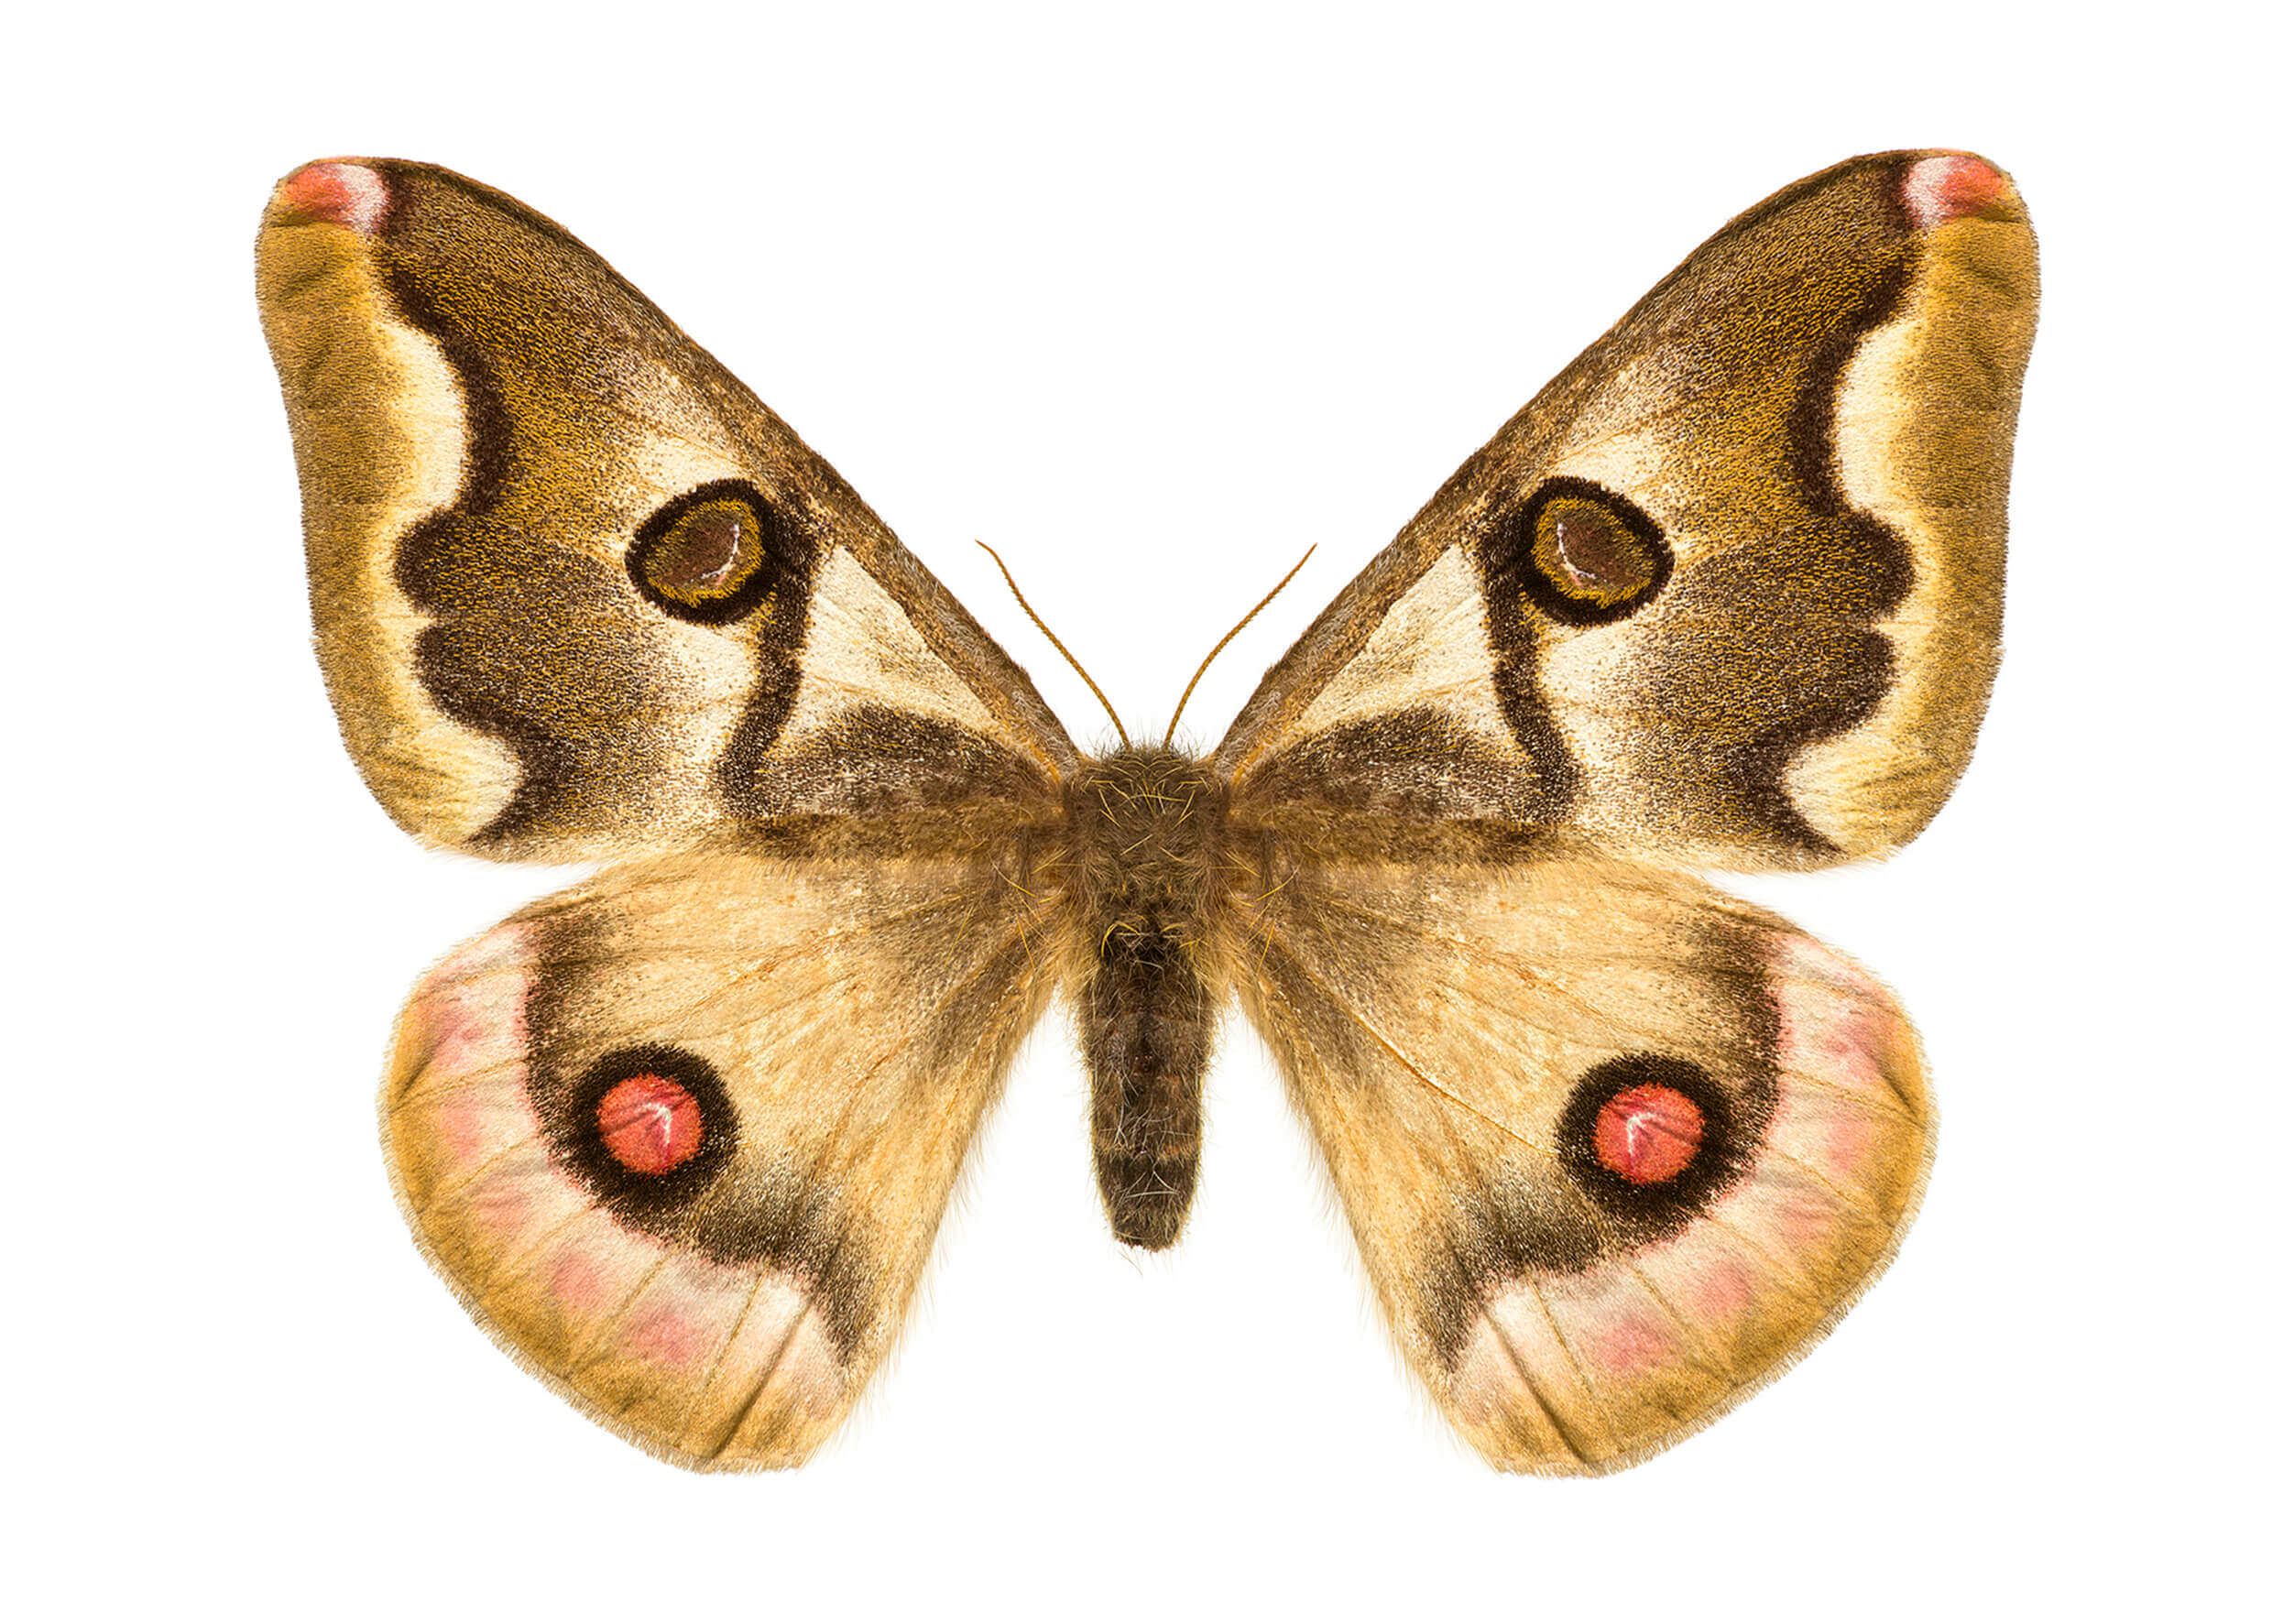 Polythysana rubrescens. Conocida como polilla búho, el macho vuela de día y la hembra de noche. Los machos son más coloridos que las hembras, pero ambos poseen una mancha redonda con apariencia de ojo.